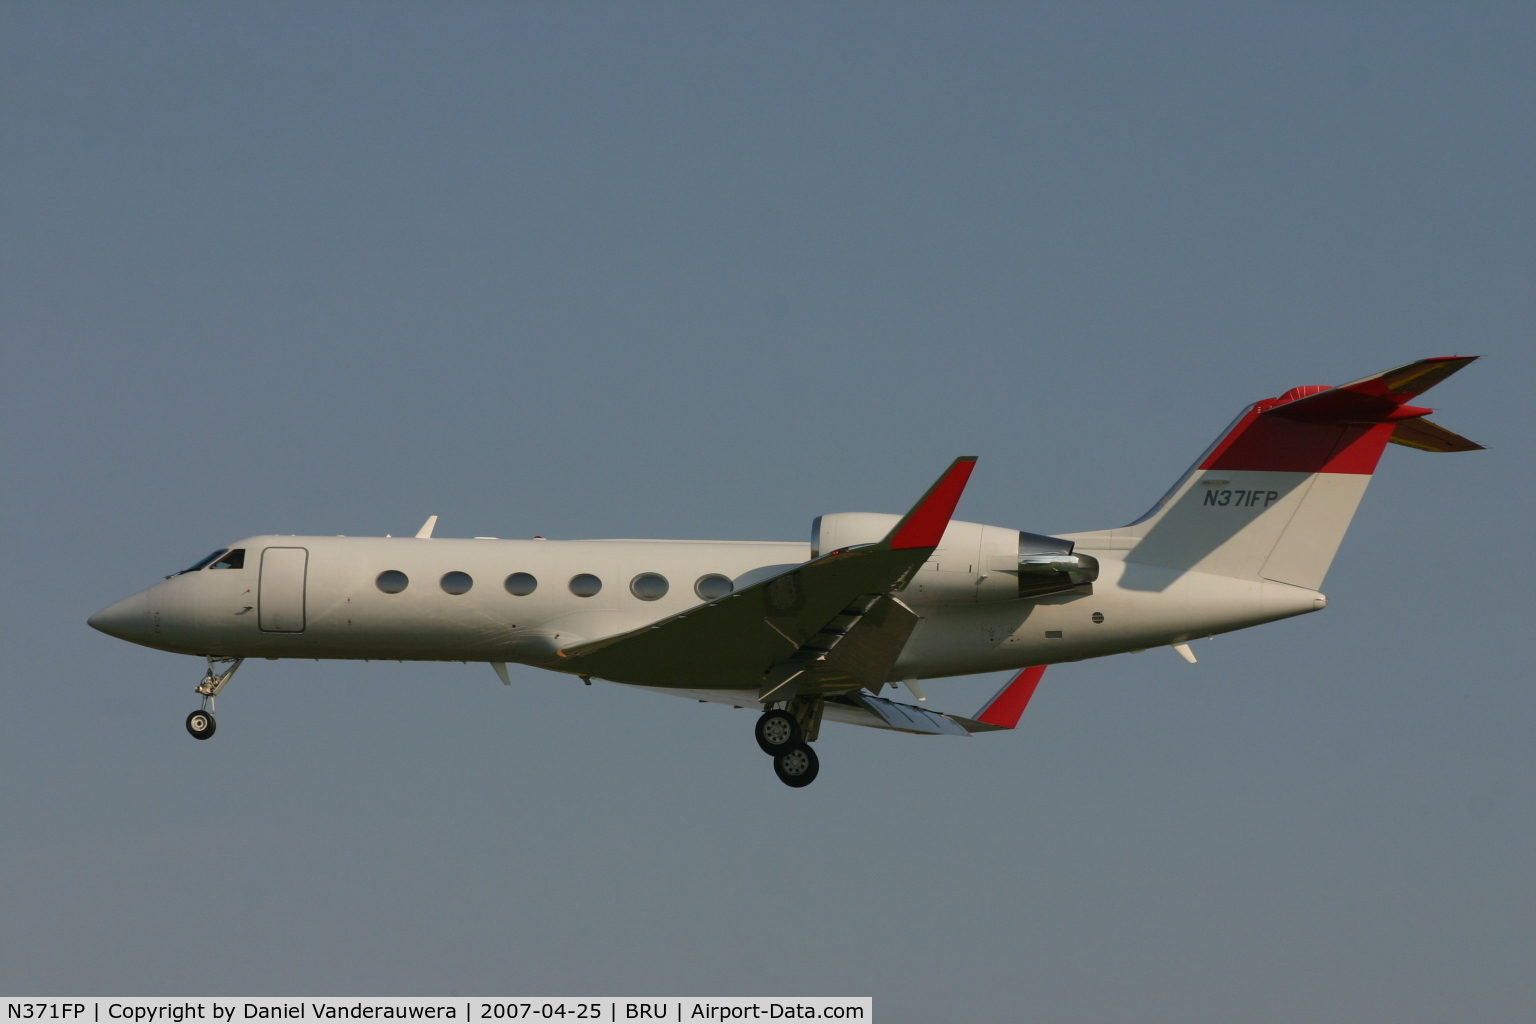 N371FP, 1999 Gulfstream Aerospace G-IV C/N 1371, descending to rwy 25L